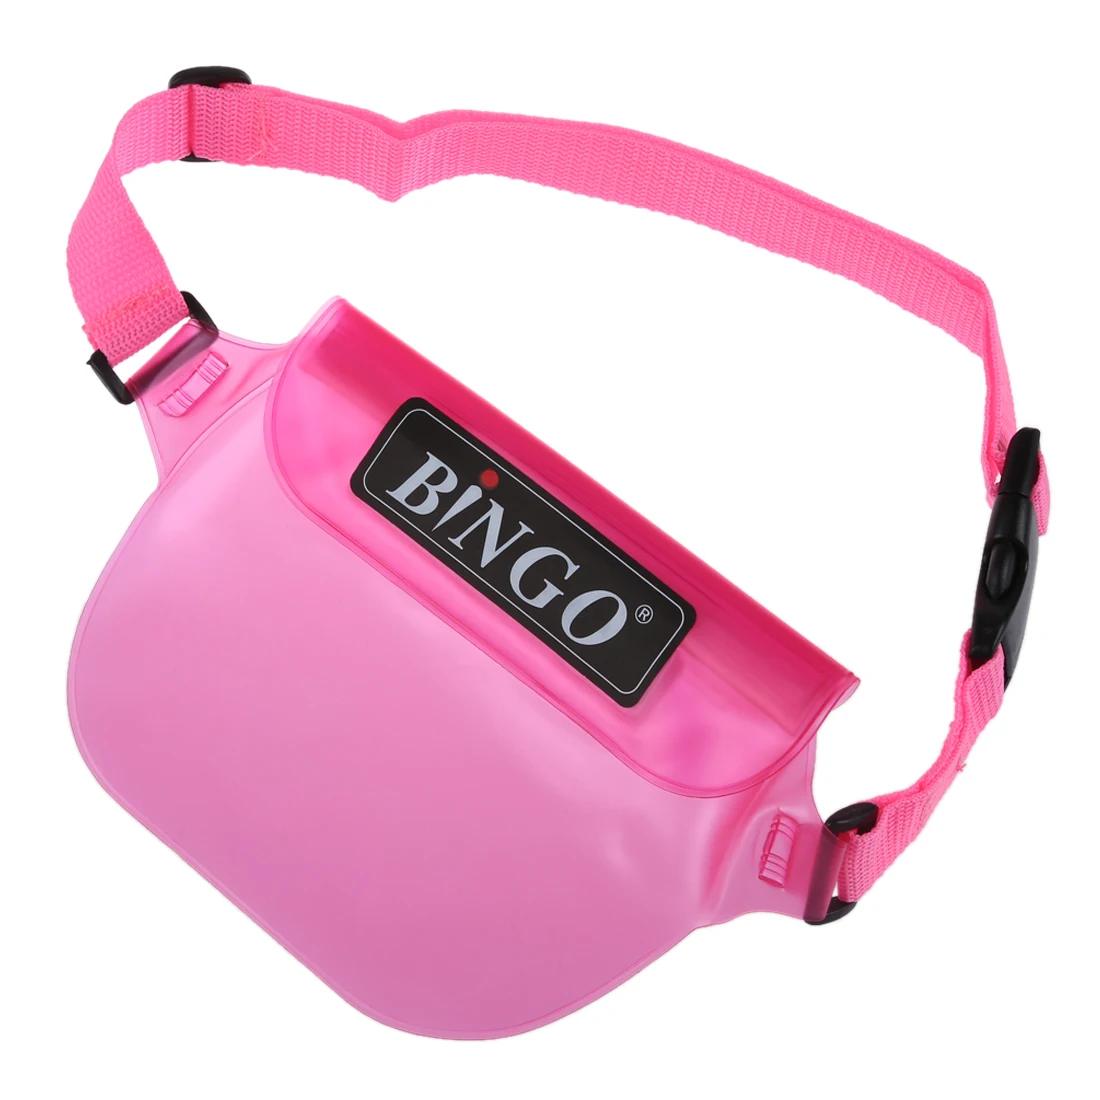 Бинго водостойкая сумка плаванье рафтинг сумки на пояс для телефона кошелек компактный камера (розовый)